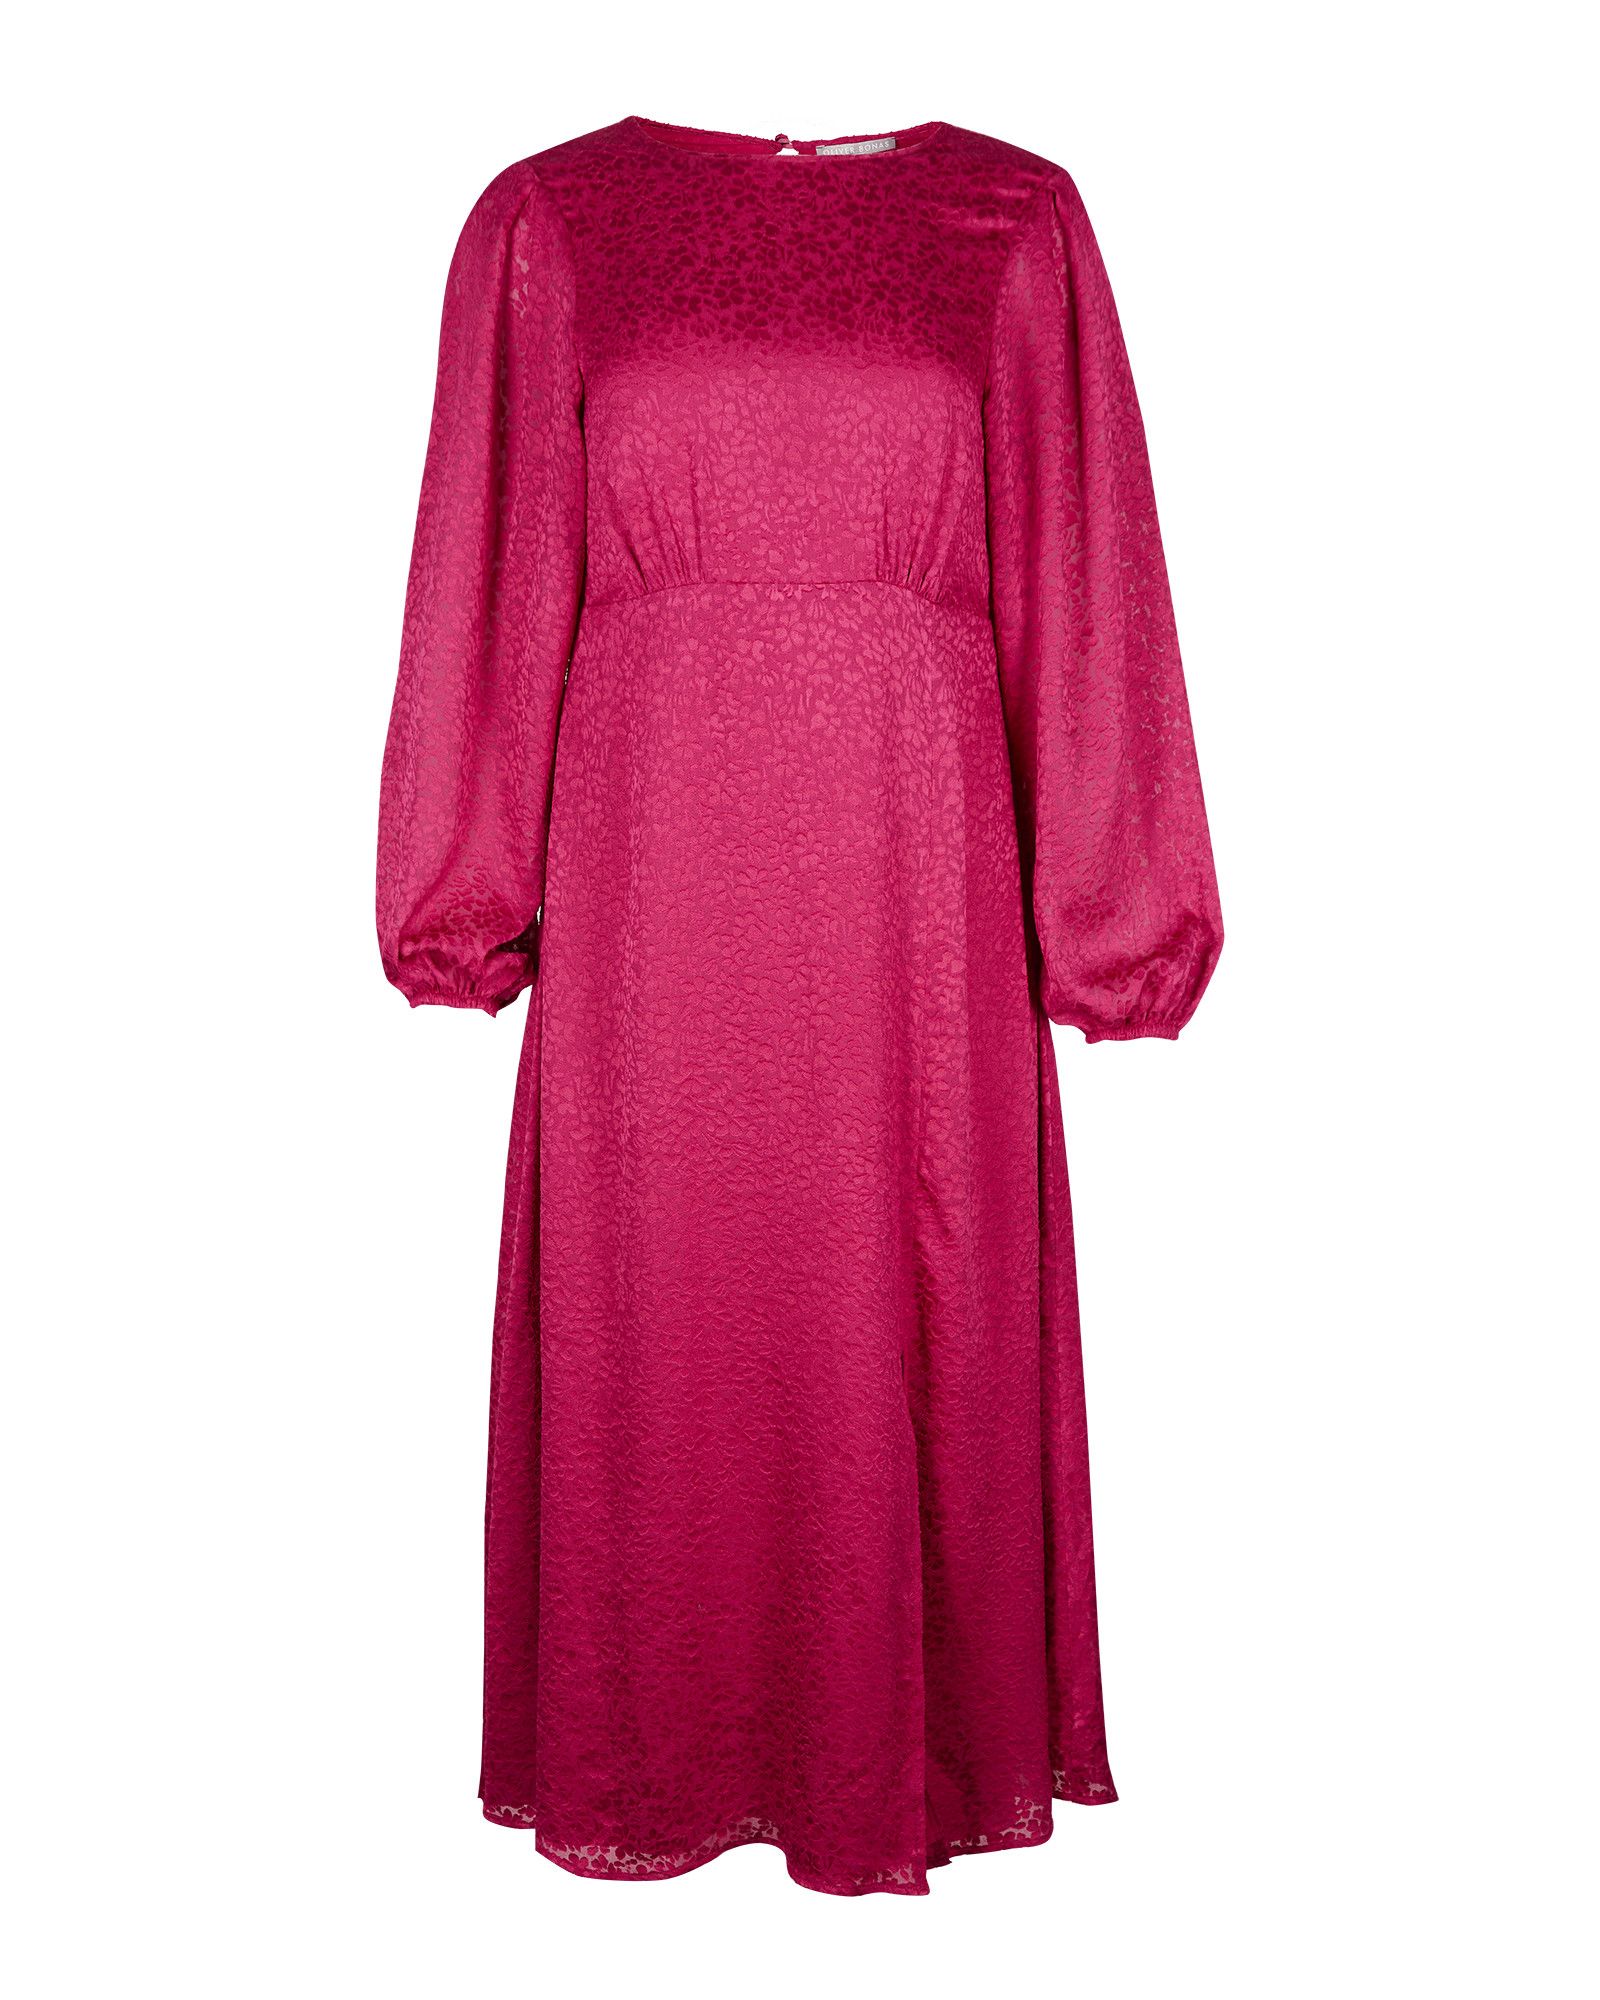 Burnout Floral Pink Midi Dress | Oliver Bonas